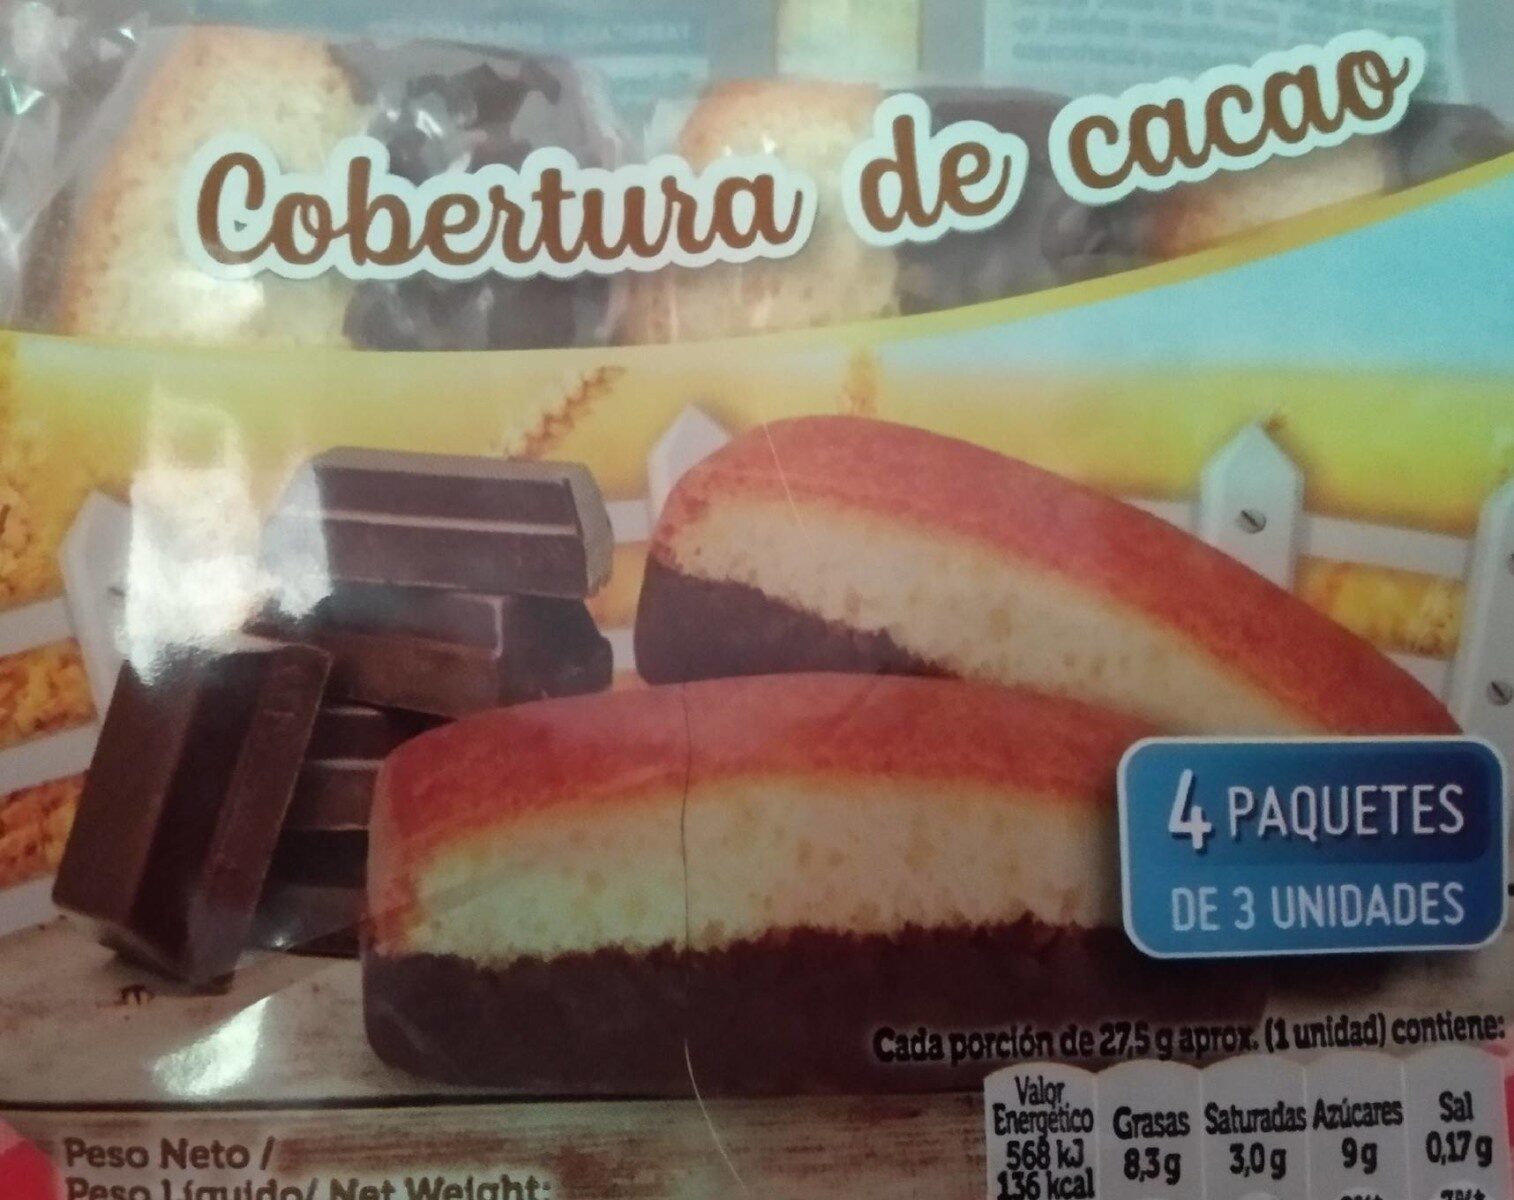 Bocaditos cobertura cacao - Producte - es